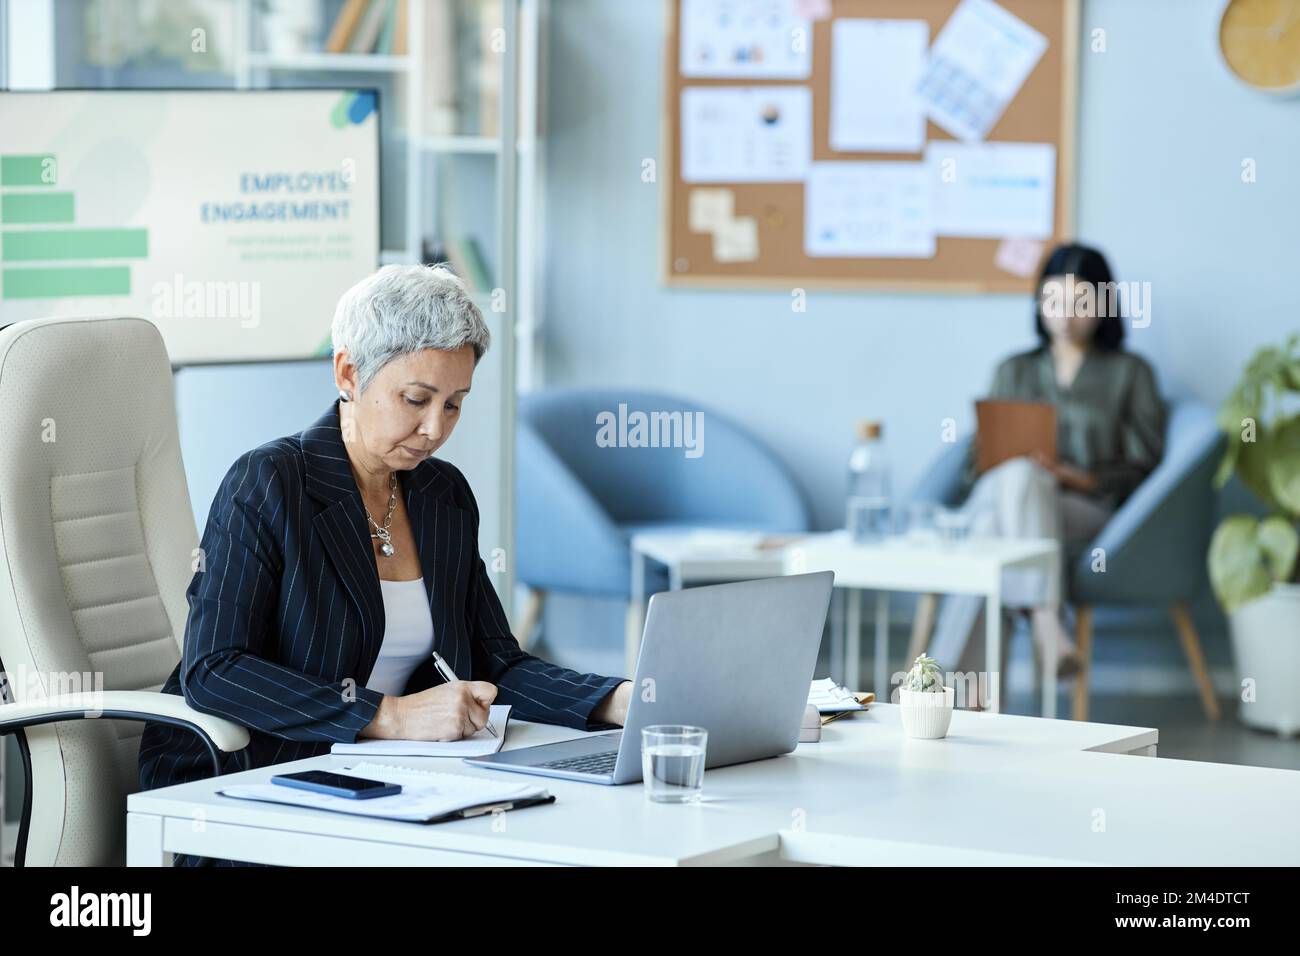 Portrait de la femme âgée en tant que patron de femme assis sur le lieu de travail au bureau et utilisant un ordinateur portable, espace de copie Banque D'Images